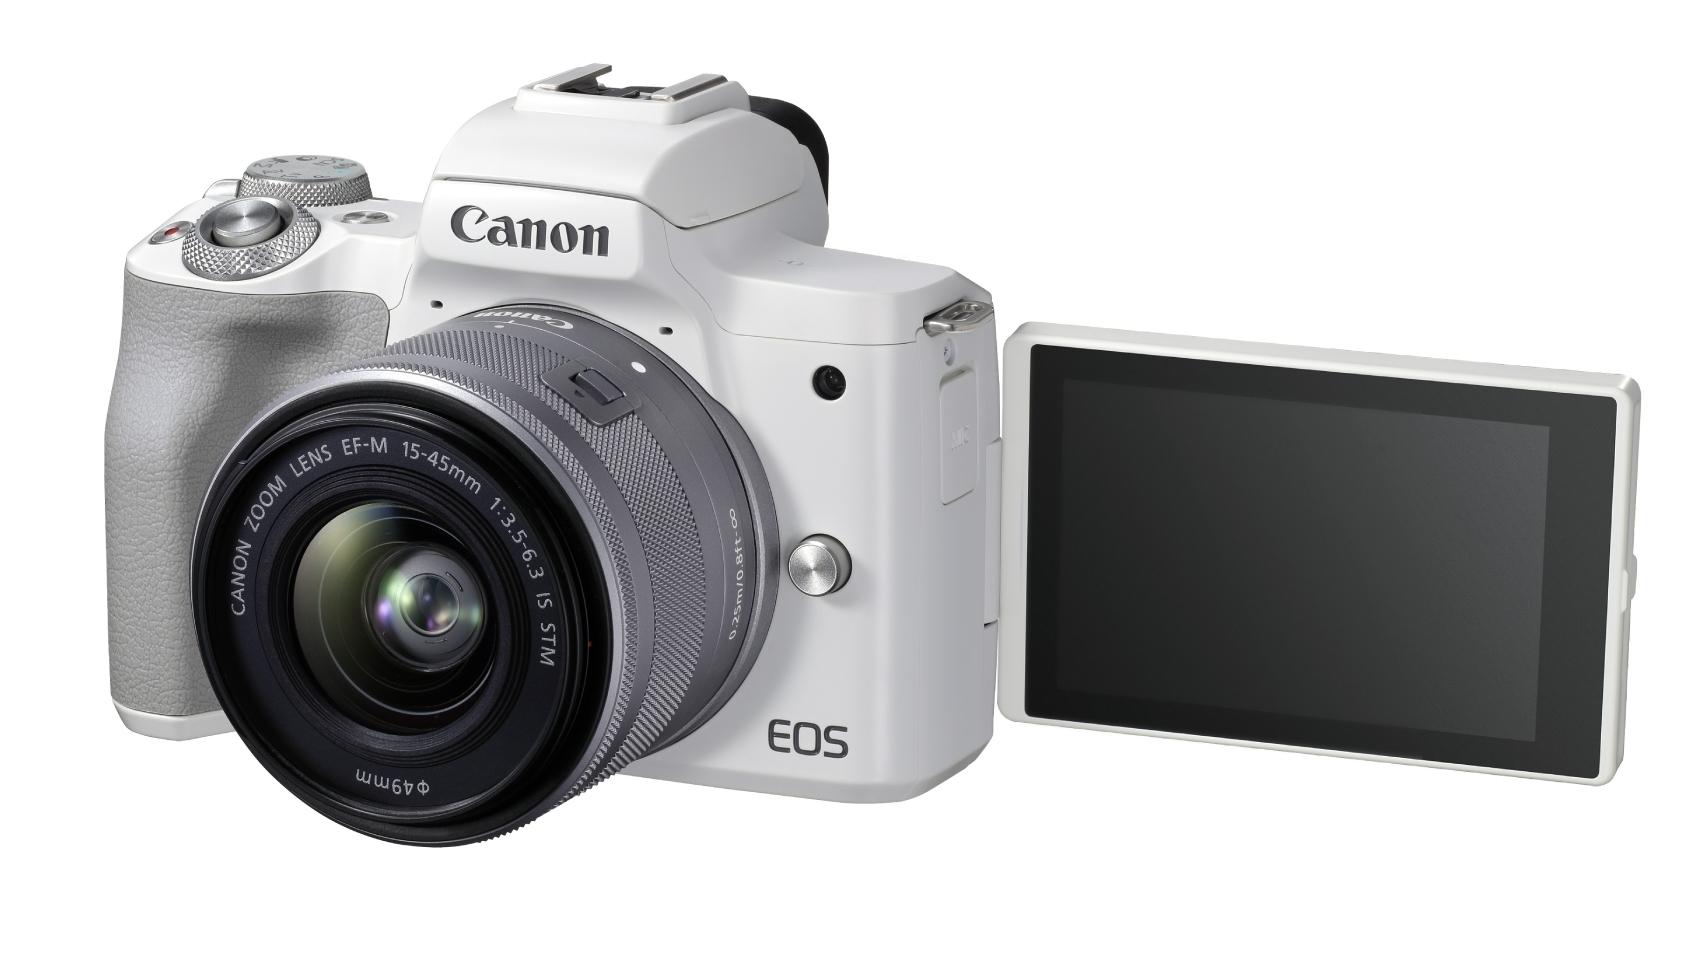 Camara Canon EOS M50 Mark II + 15-45mm + Adaptador Canon Montura M